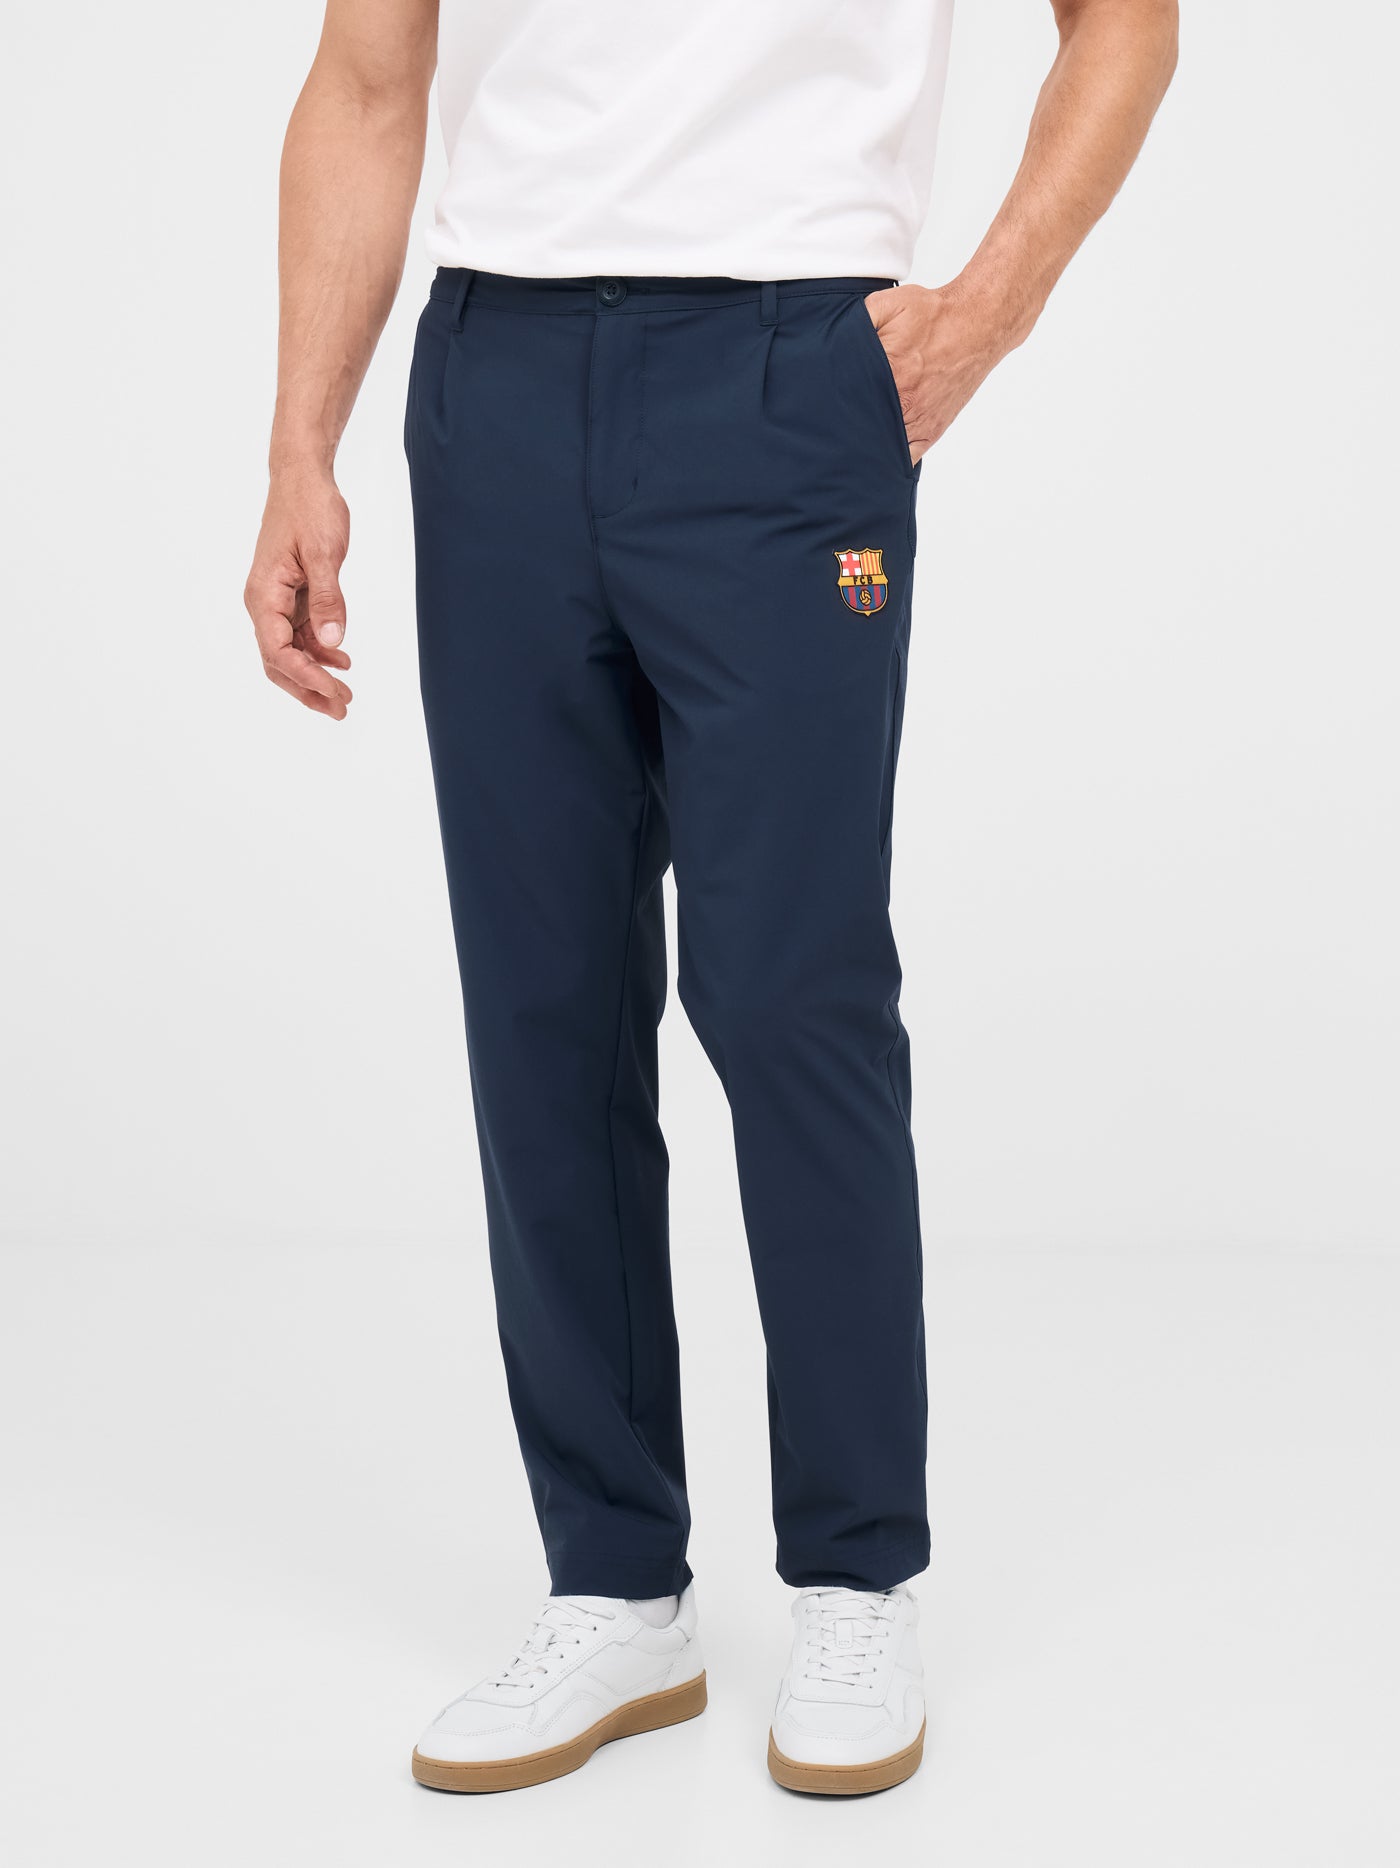 Barça navy blue pants